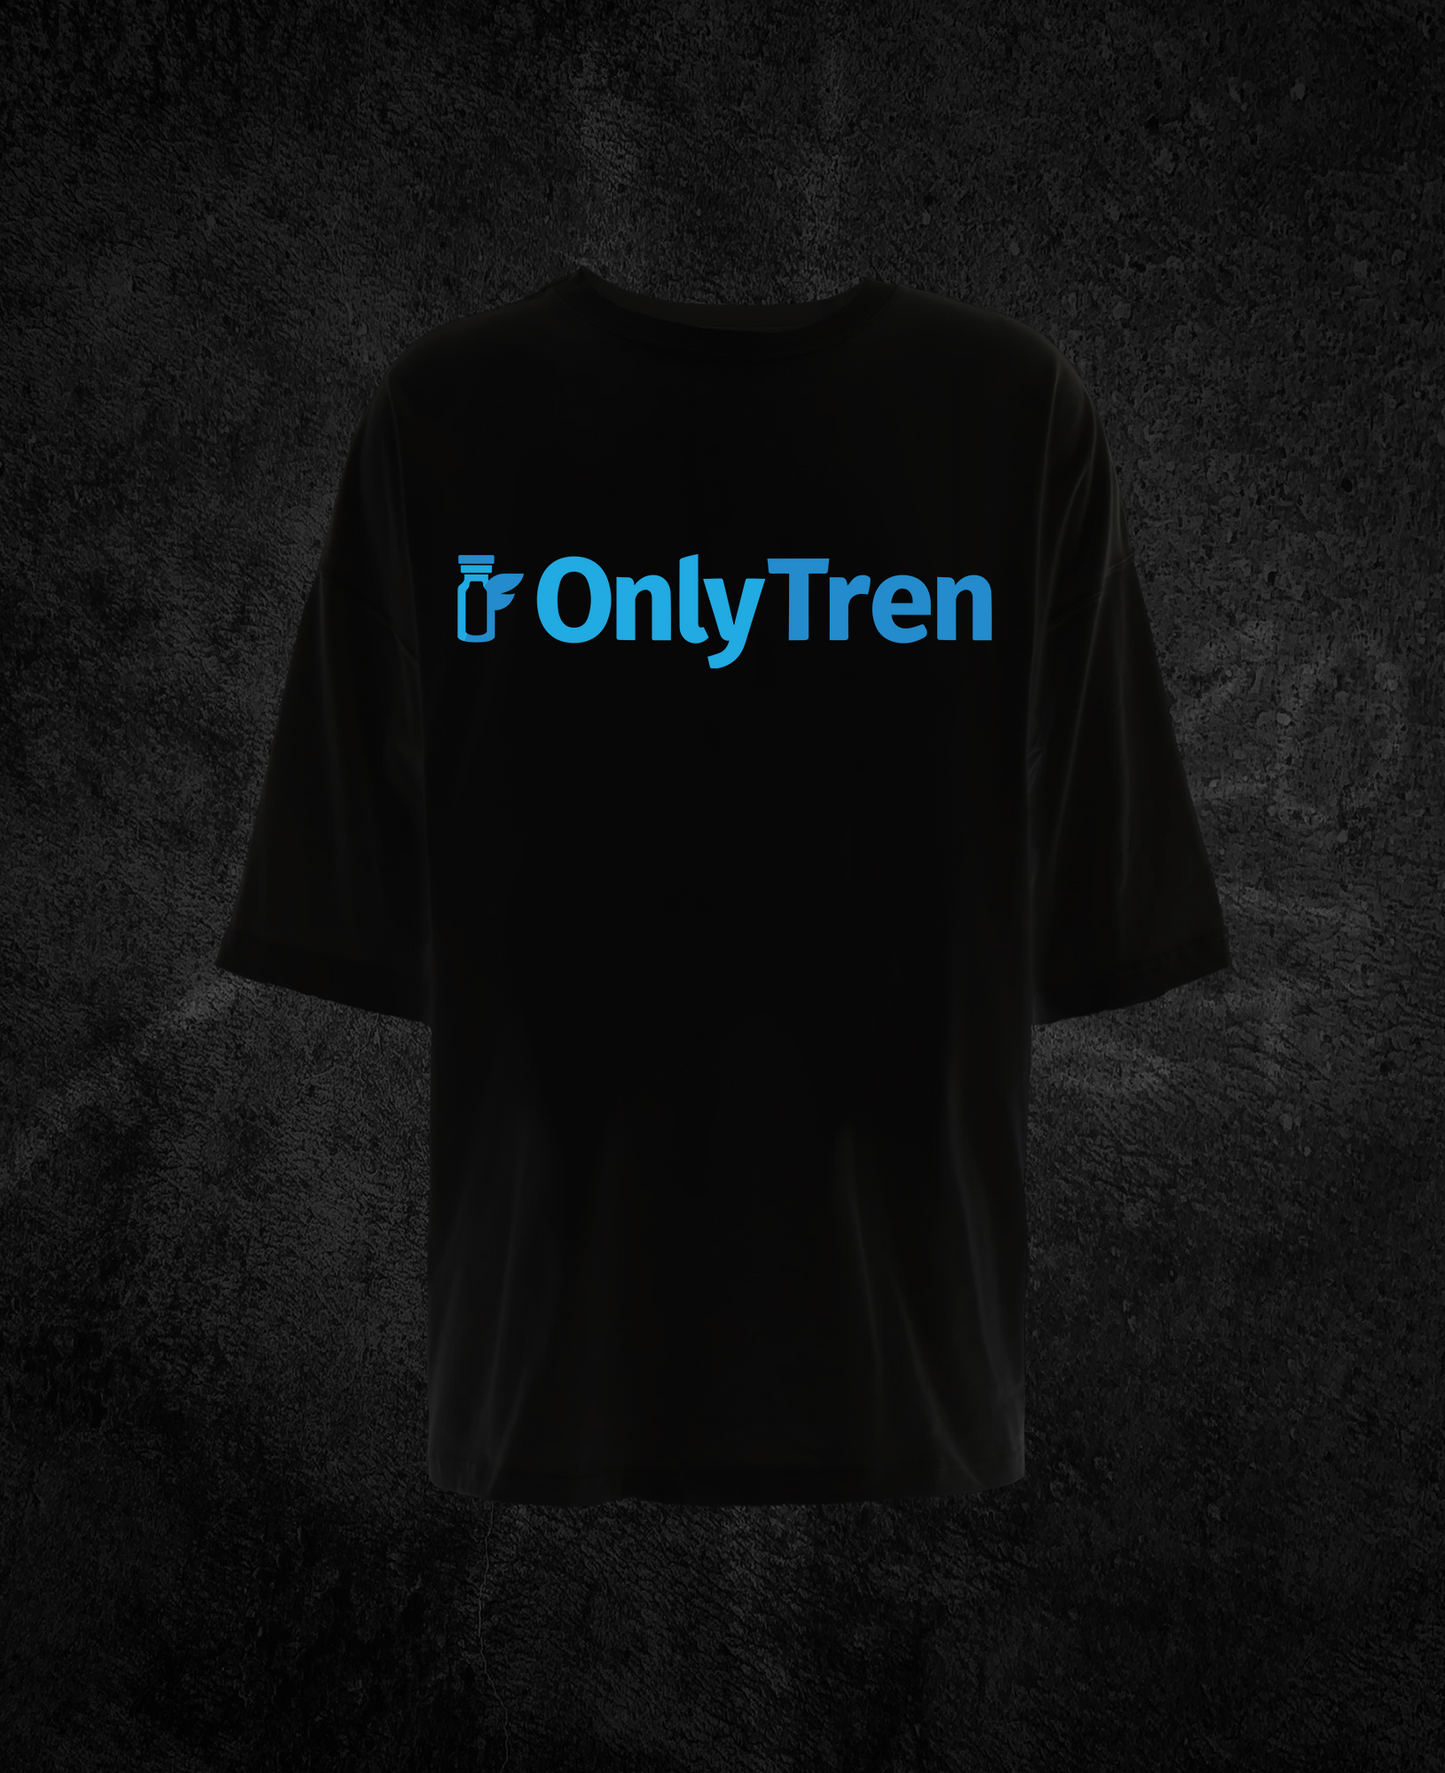 OnlyTren